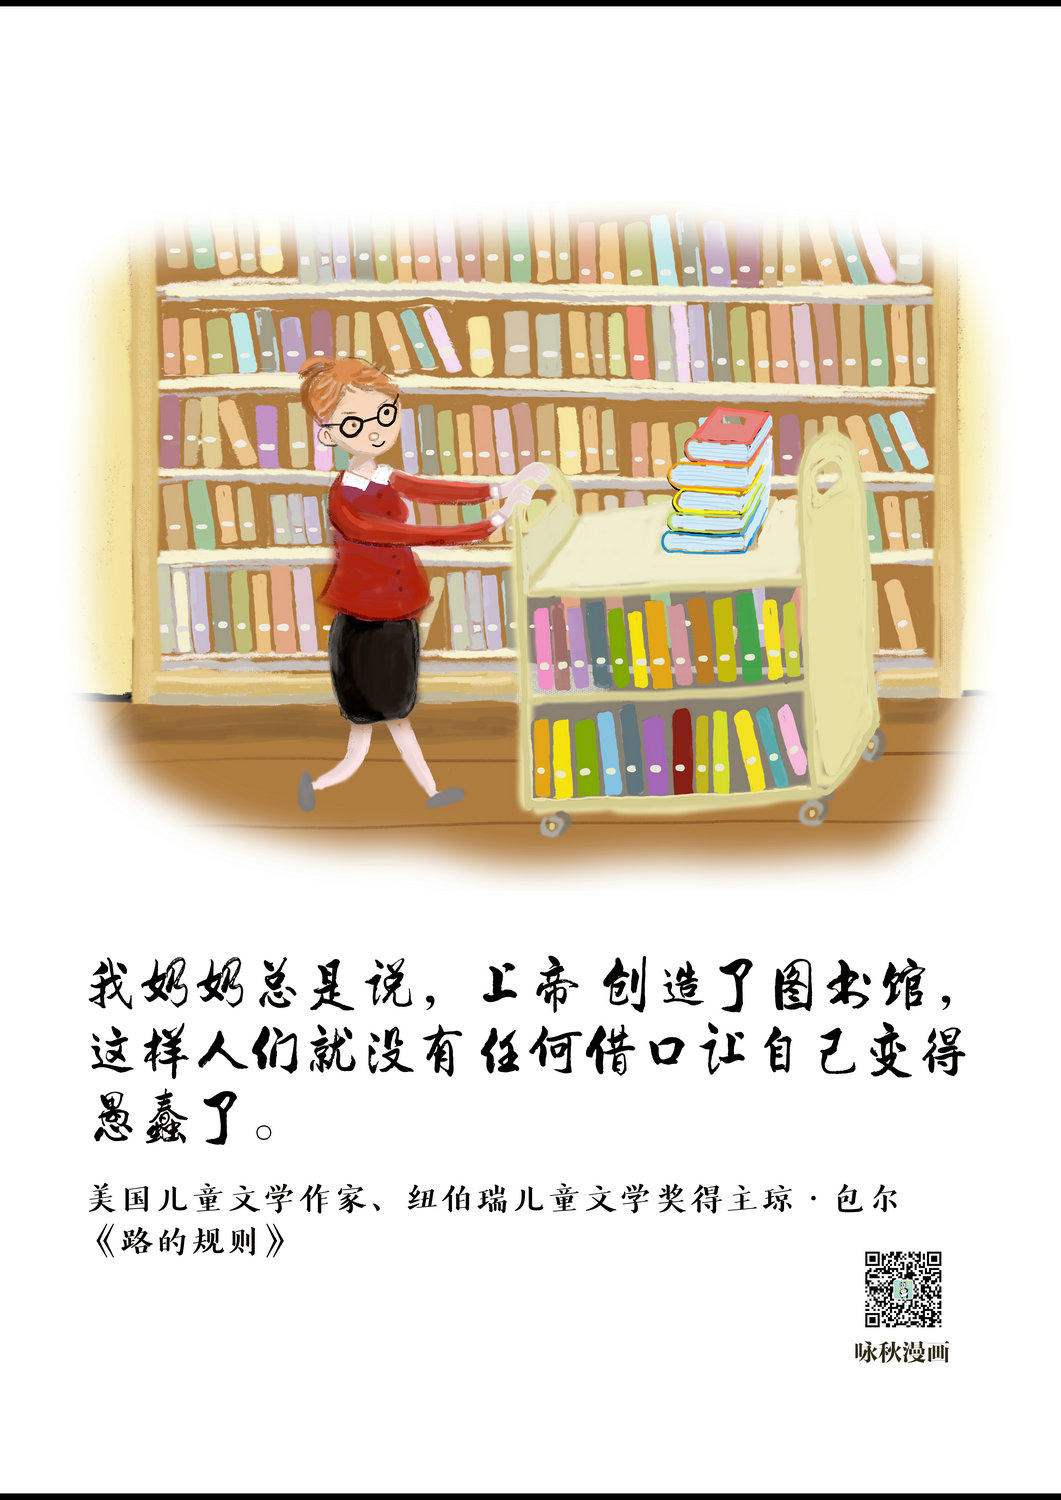 “阅读为我赋能”阅读推广手绘海报展_图24